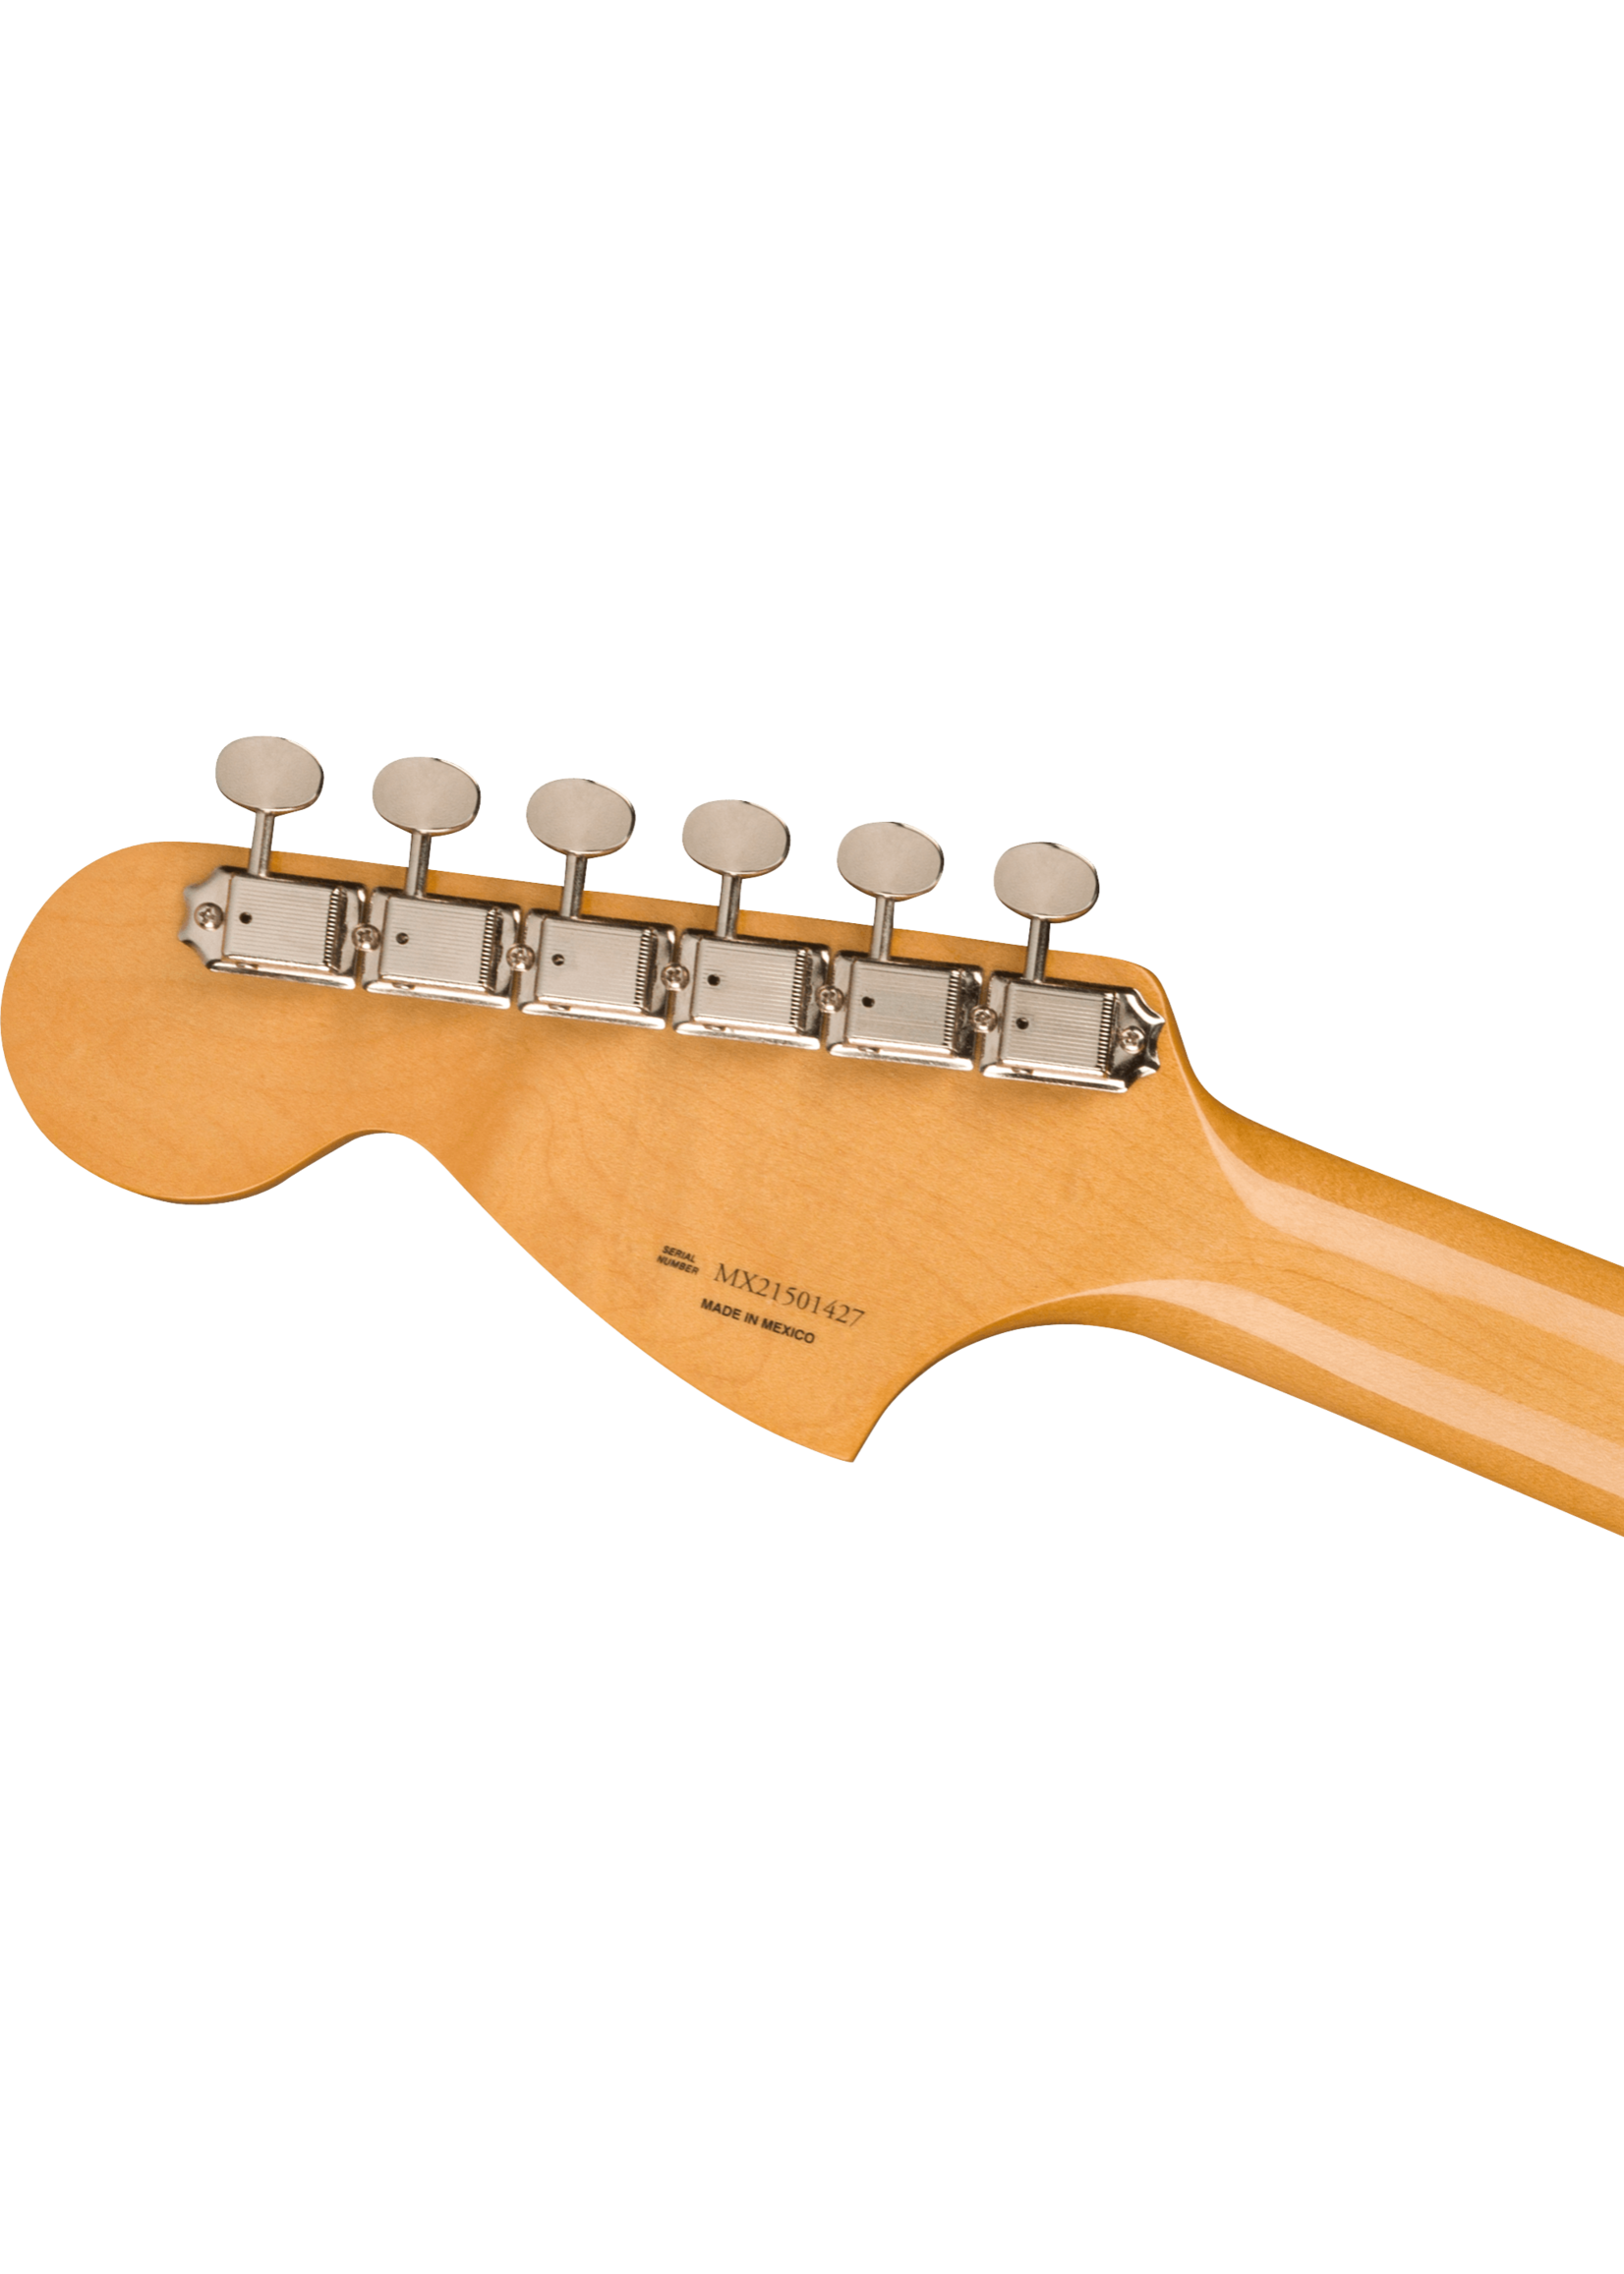 Fender Fender Kurt Cobain Jag-Stang Sonic Blue